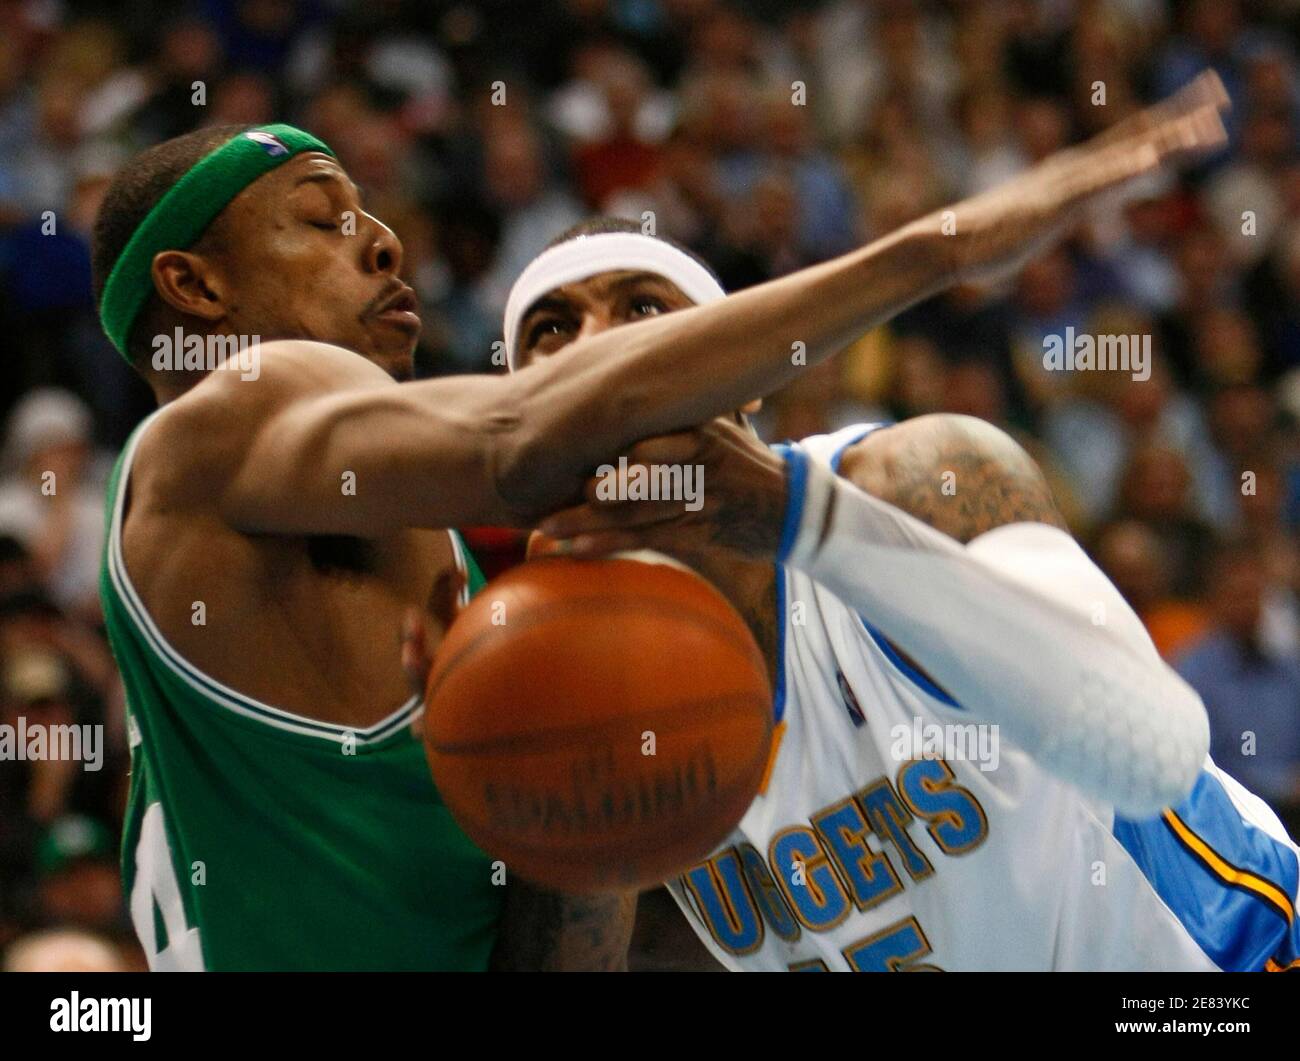 Denver Nuggets Forward Carmelo Anthony ha pelado la pelota por el Boston Celtics Forward Paul Pierce (L) en su partido de baloncesto de la NBA en Denver el 23 de febrero de 2009. REUTERS/Rick Wilking (ESTADOS UNIDOS) Foto de stock